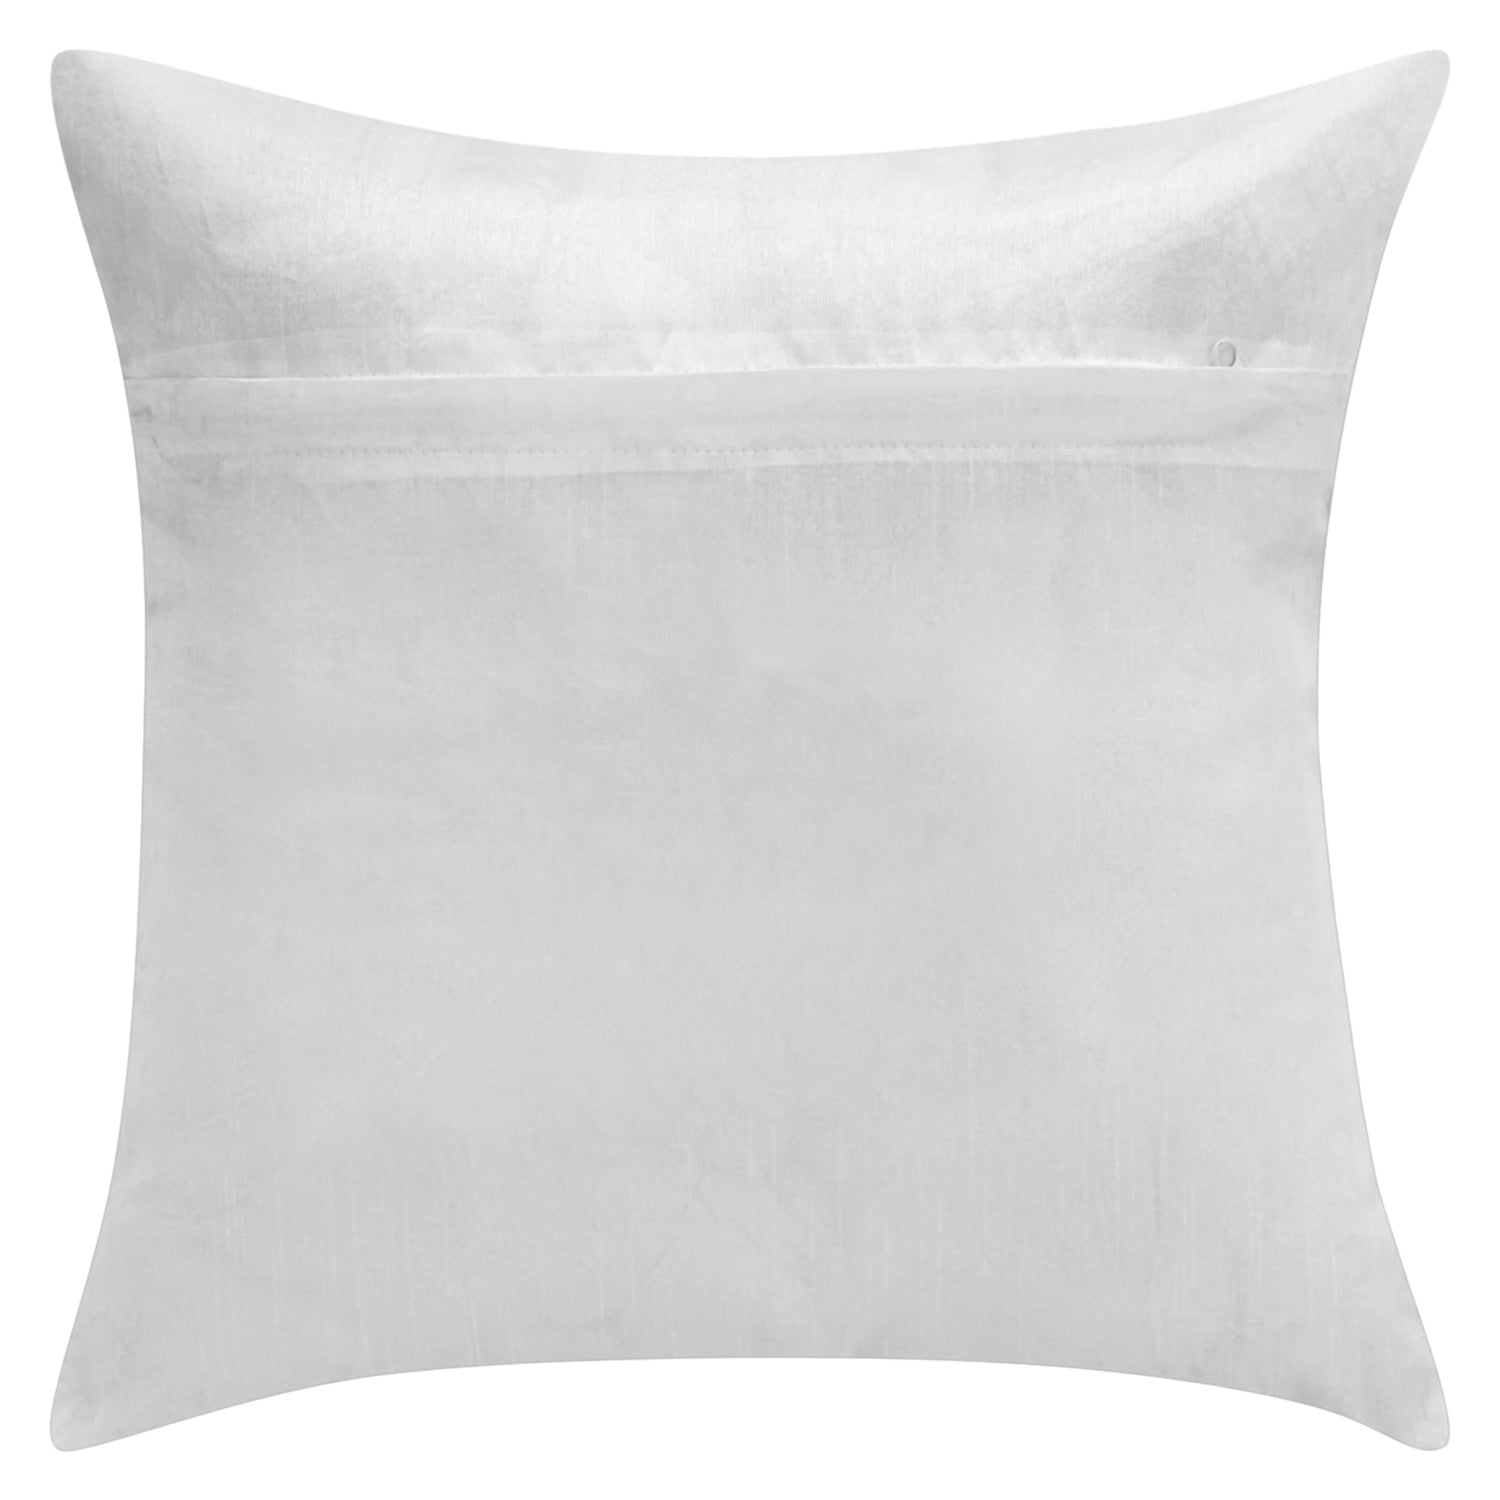 Desi Kapda Floral Cushions & Pillows Cover